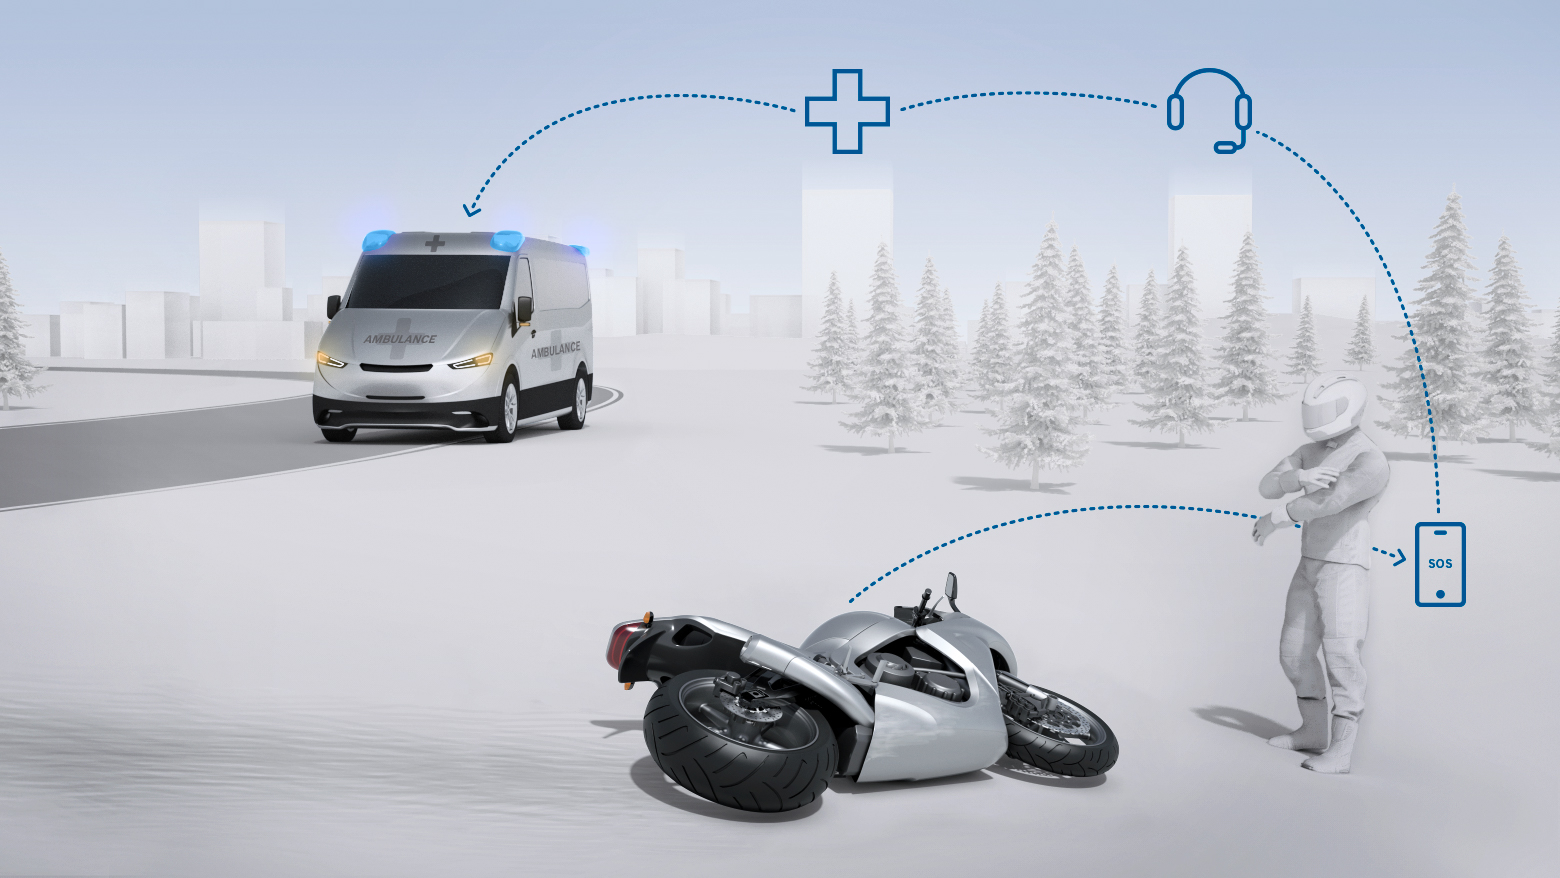 Assistenza rapida in caso di emergenza: Bosch introduce le chiamate di emergenza automatiche nel mondo delle moto